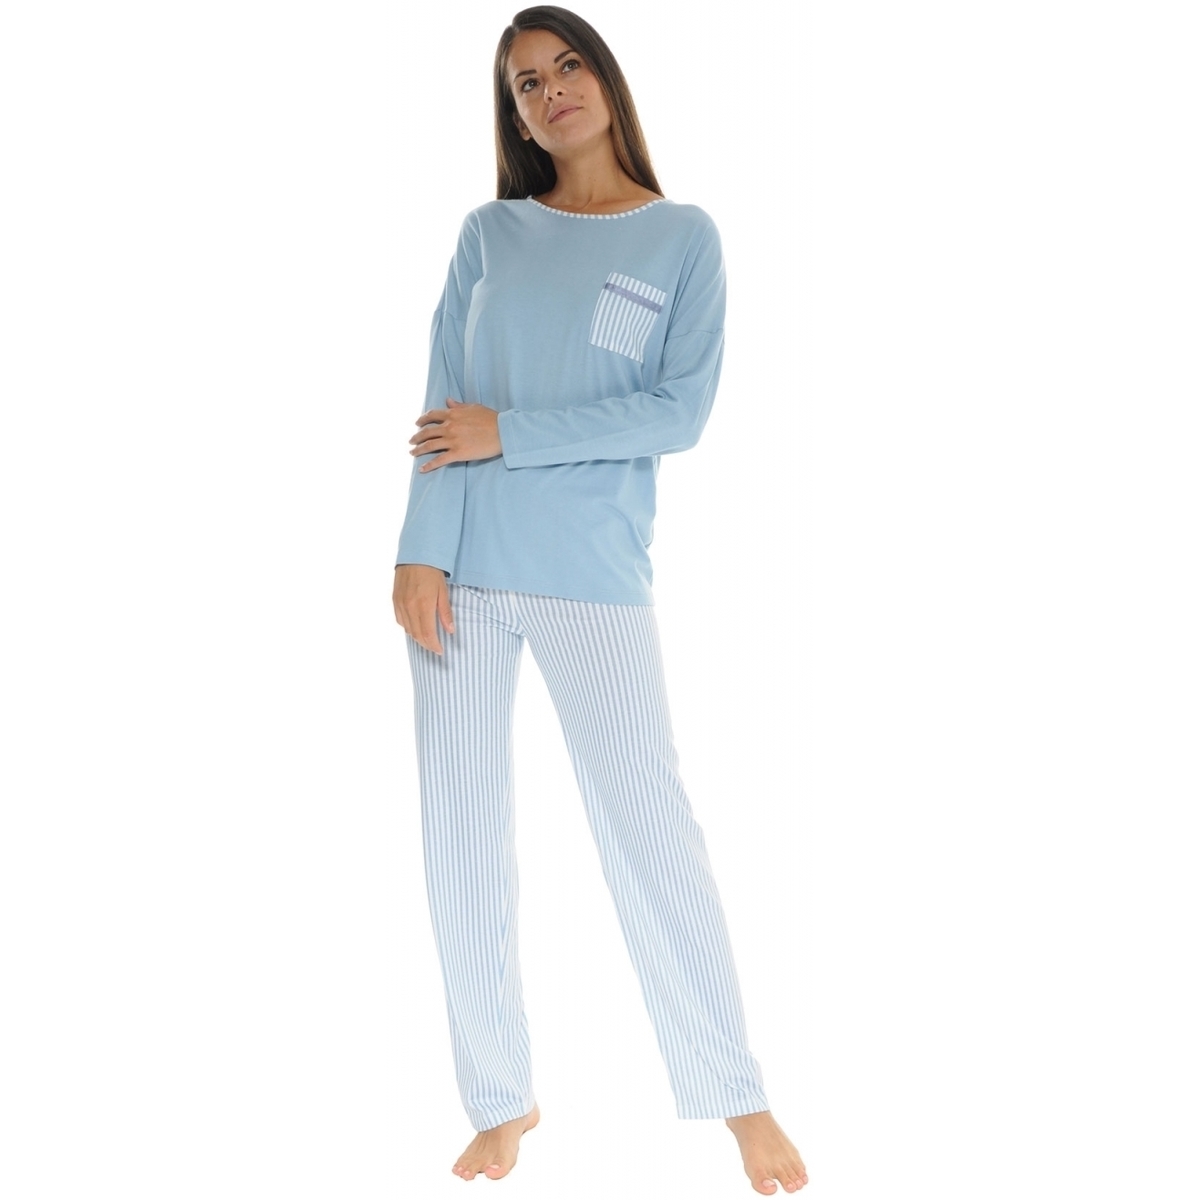 Îmbracaminte Femei Pijamale și Cămăsi de noapte Christian Cane JOANNA albastru